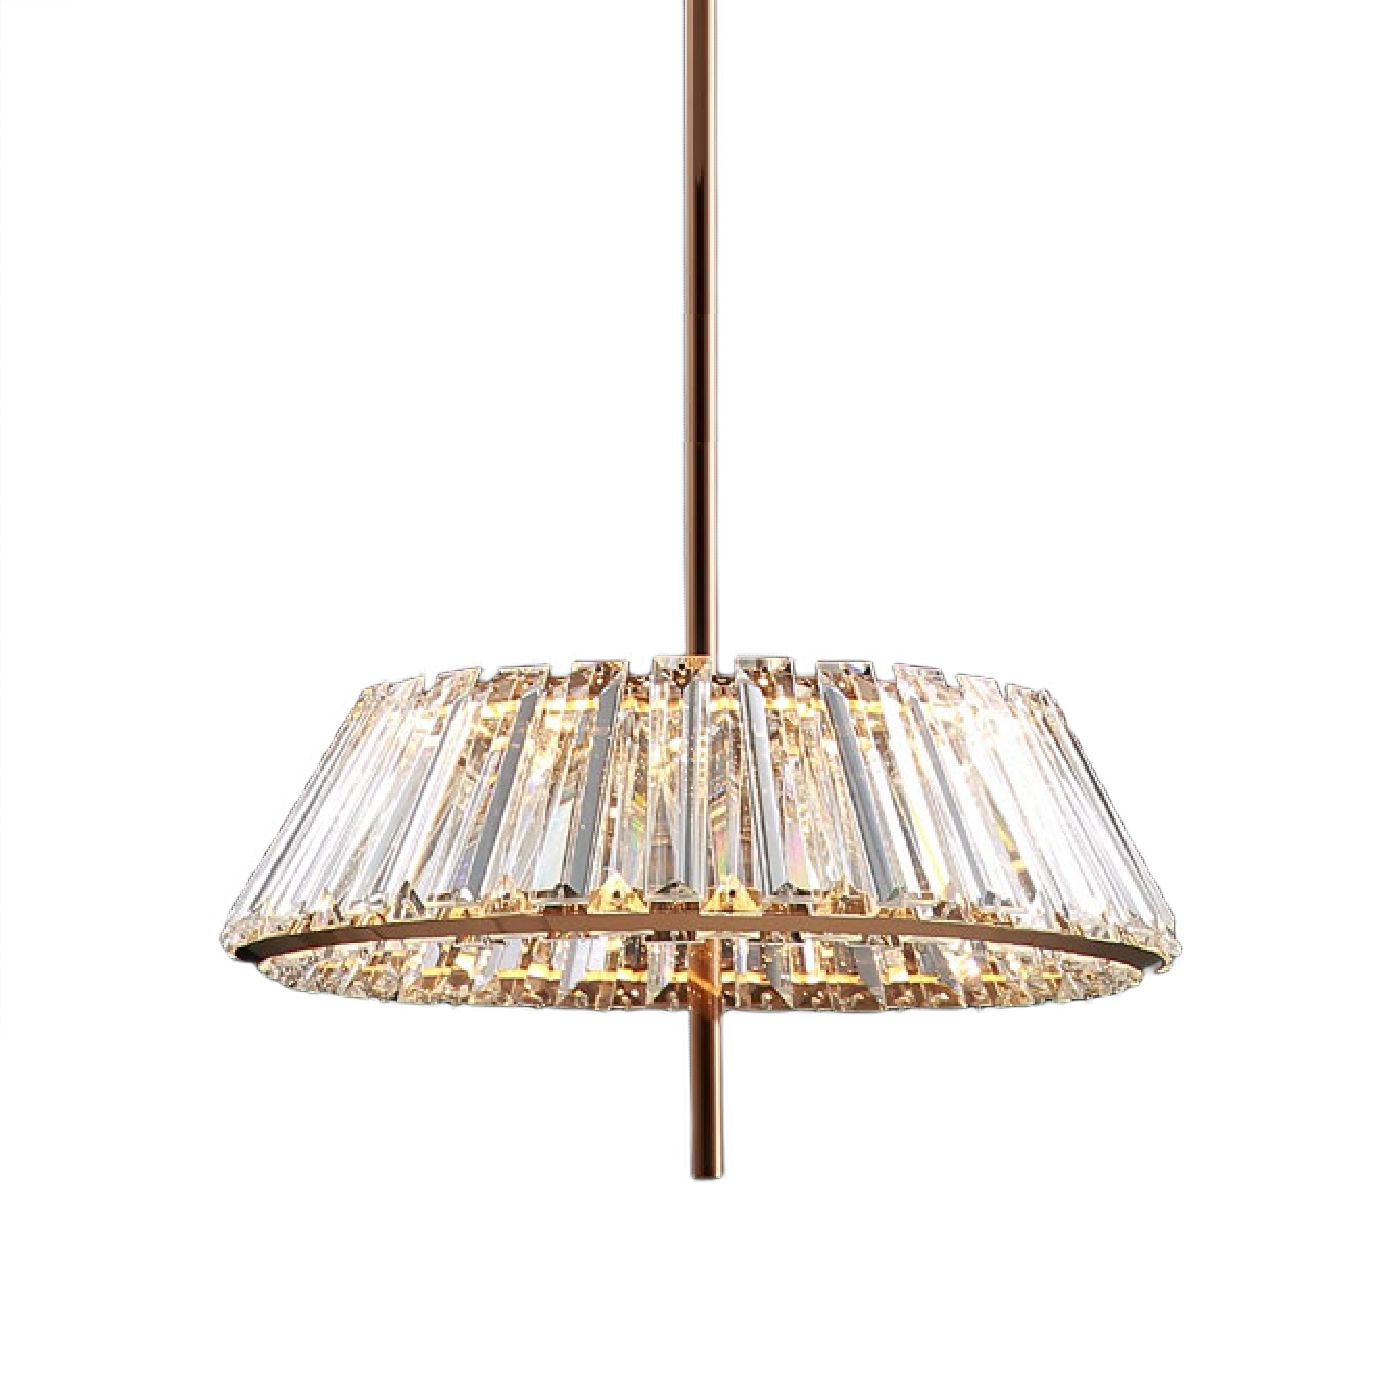 LAMPASA chandelier by Romatti